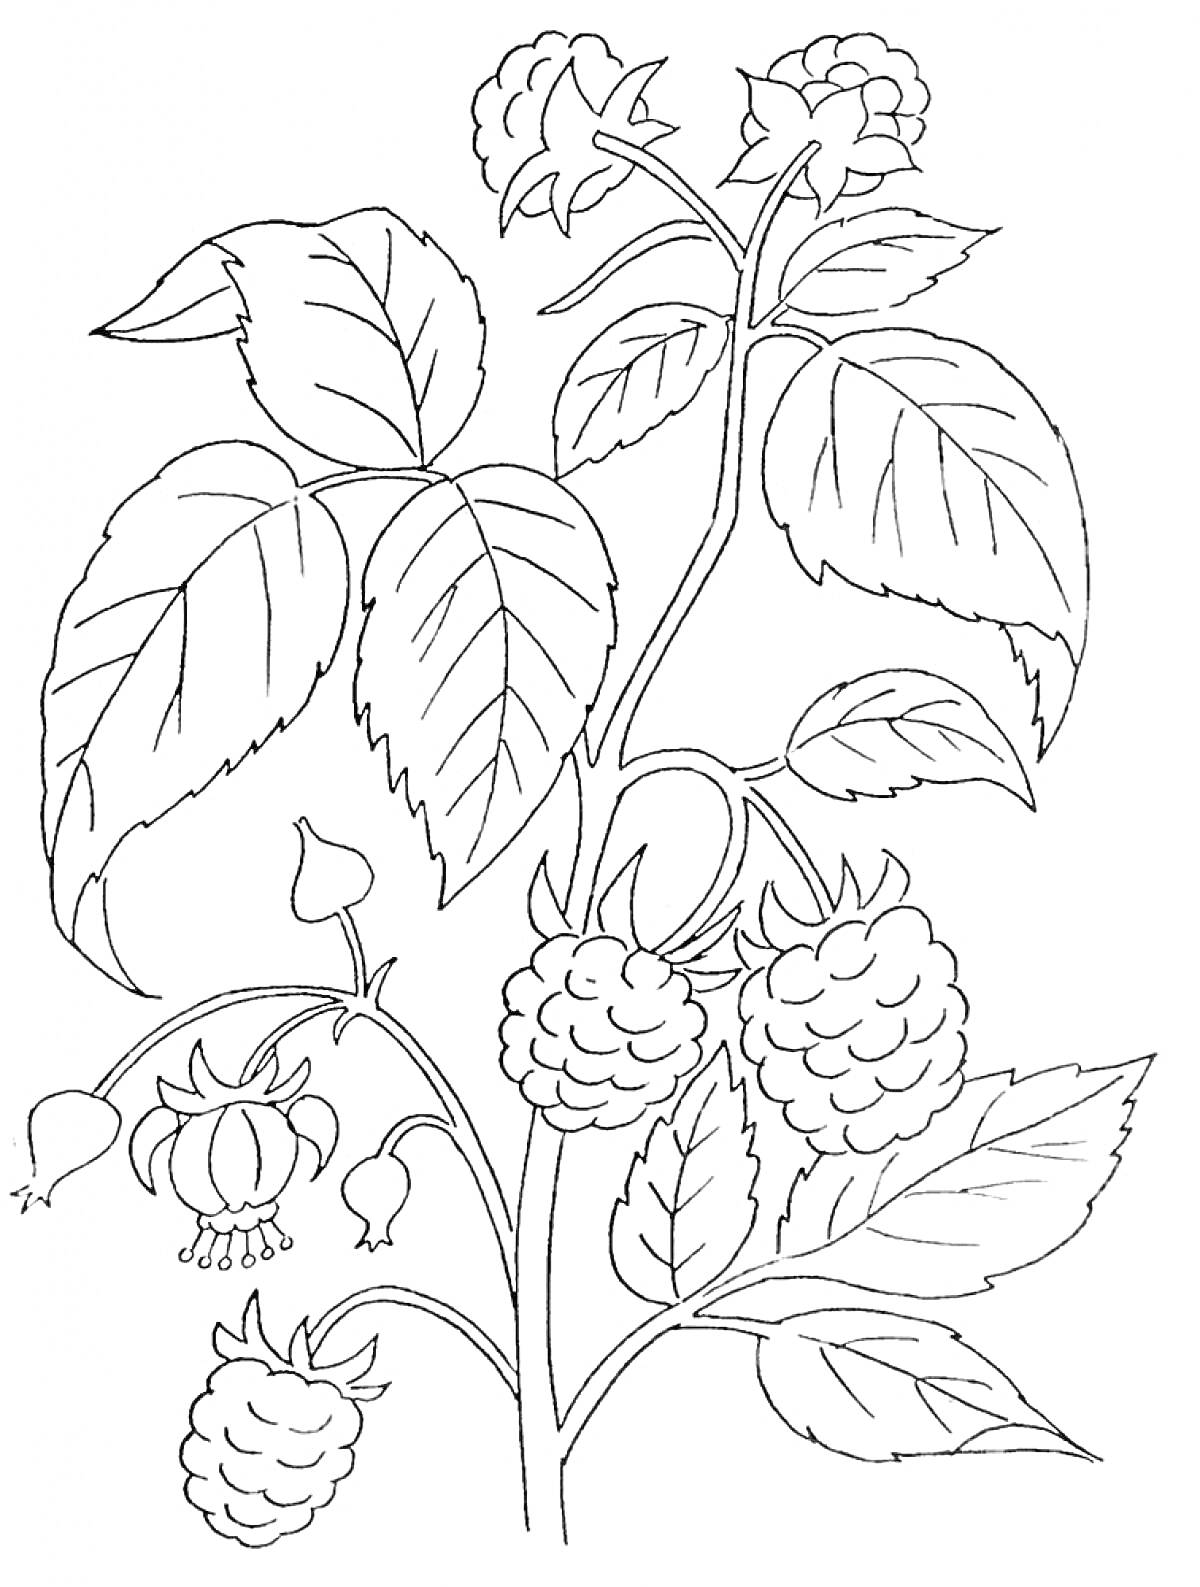 Раскраска Куст малины с ягодами, цветами и листьями